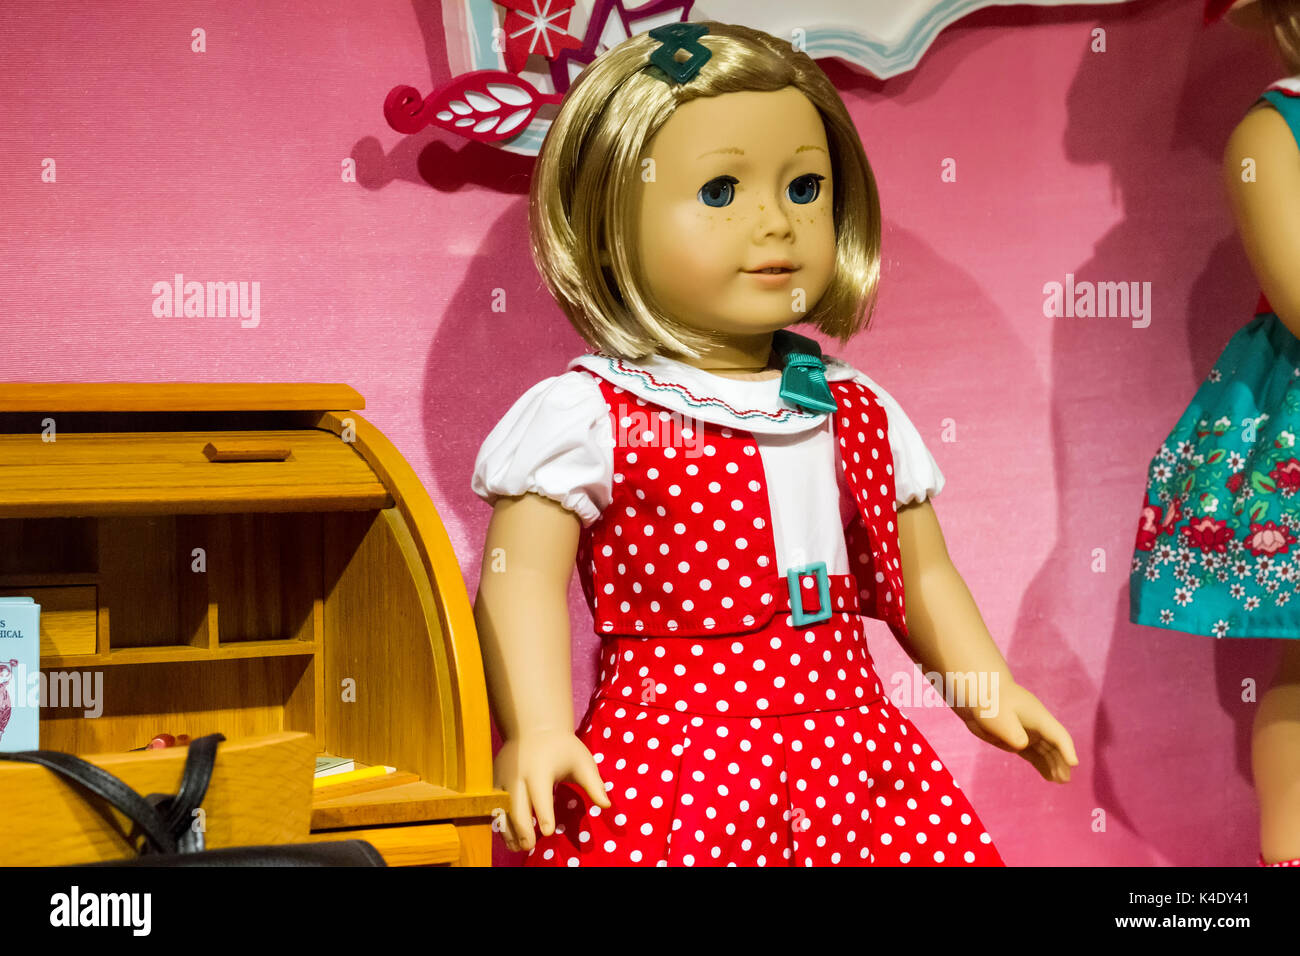 La Ciudad de Nueva York - 19 de noviembre, 2015: Muñecas en la tienda American Girl Place, en la Ciudad de Nueva York. American Girl Place es una tienda que vende American Girl Foto de stock